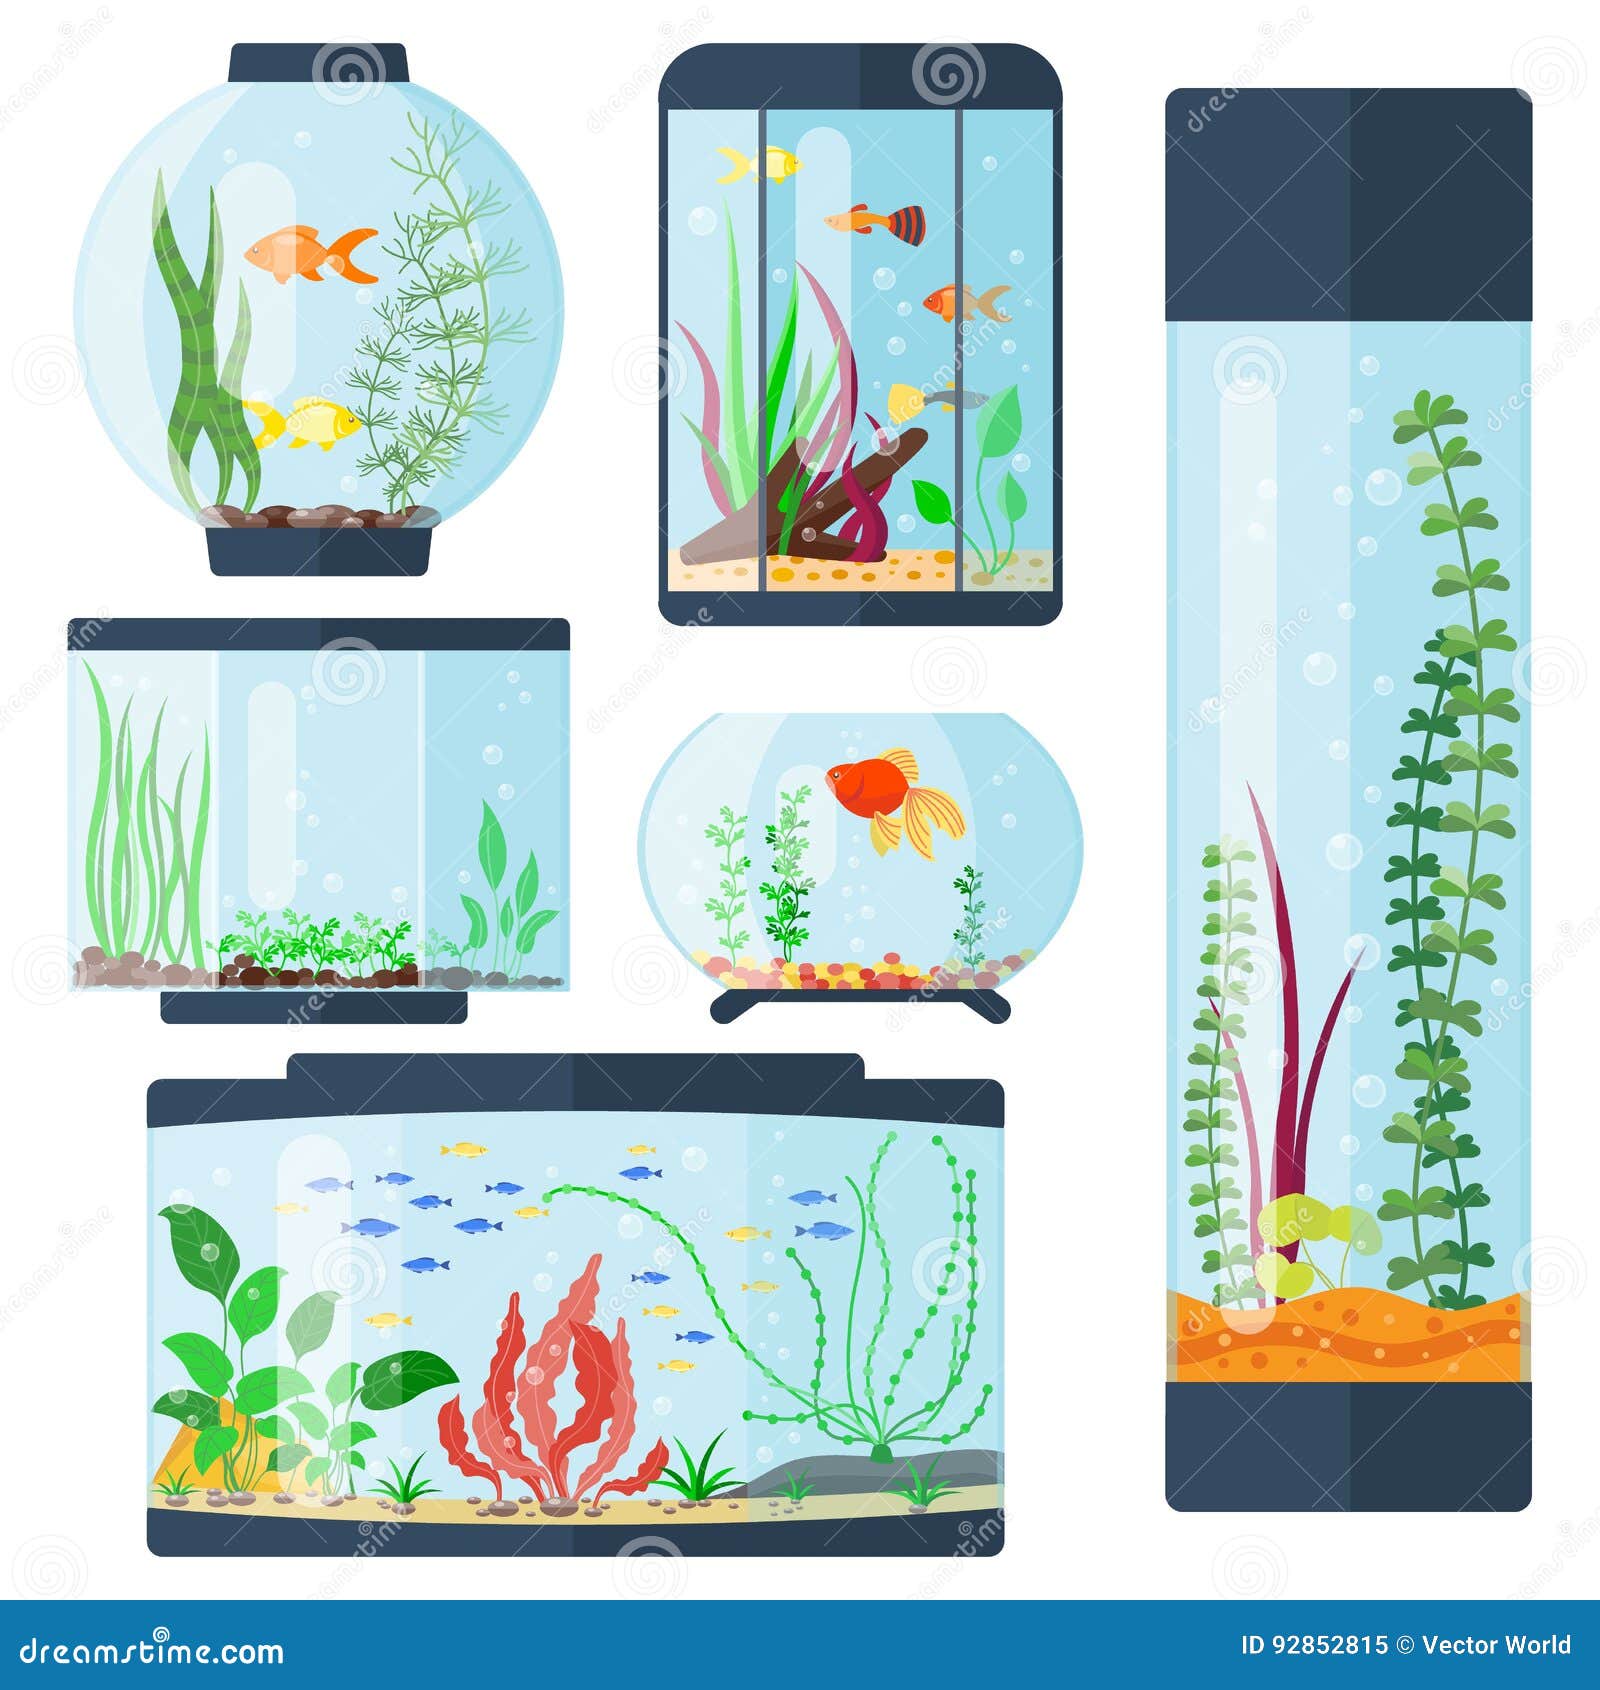 Aquarium Big Room Stock Illustrations – 85 Aquarium Big Room Stock  Illustrations, Vectors & Clipart - Dreamstime